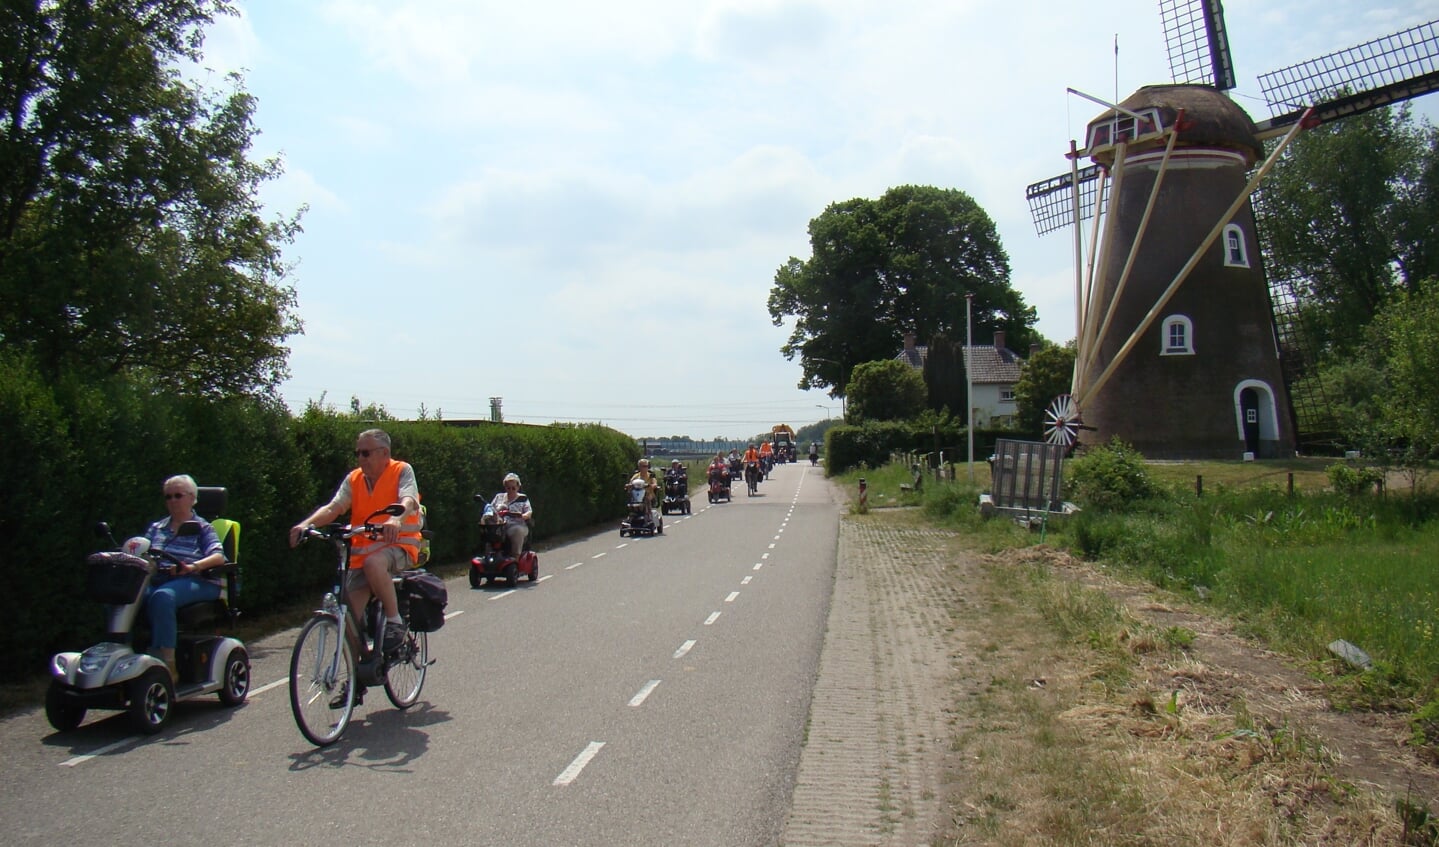 Rijdend langs de Linge passeert het gezelschap de imposante en kleurrijke molen in Zoelen 